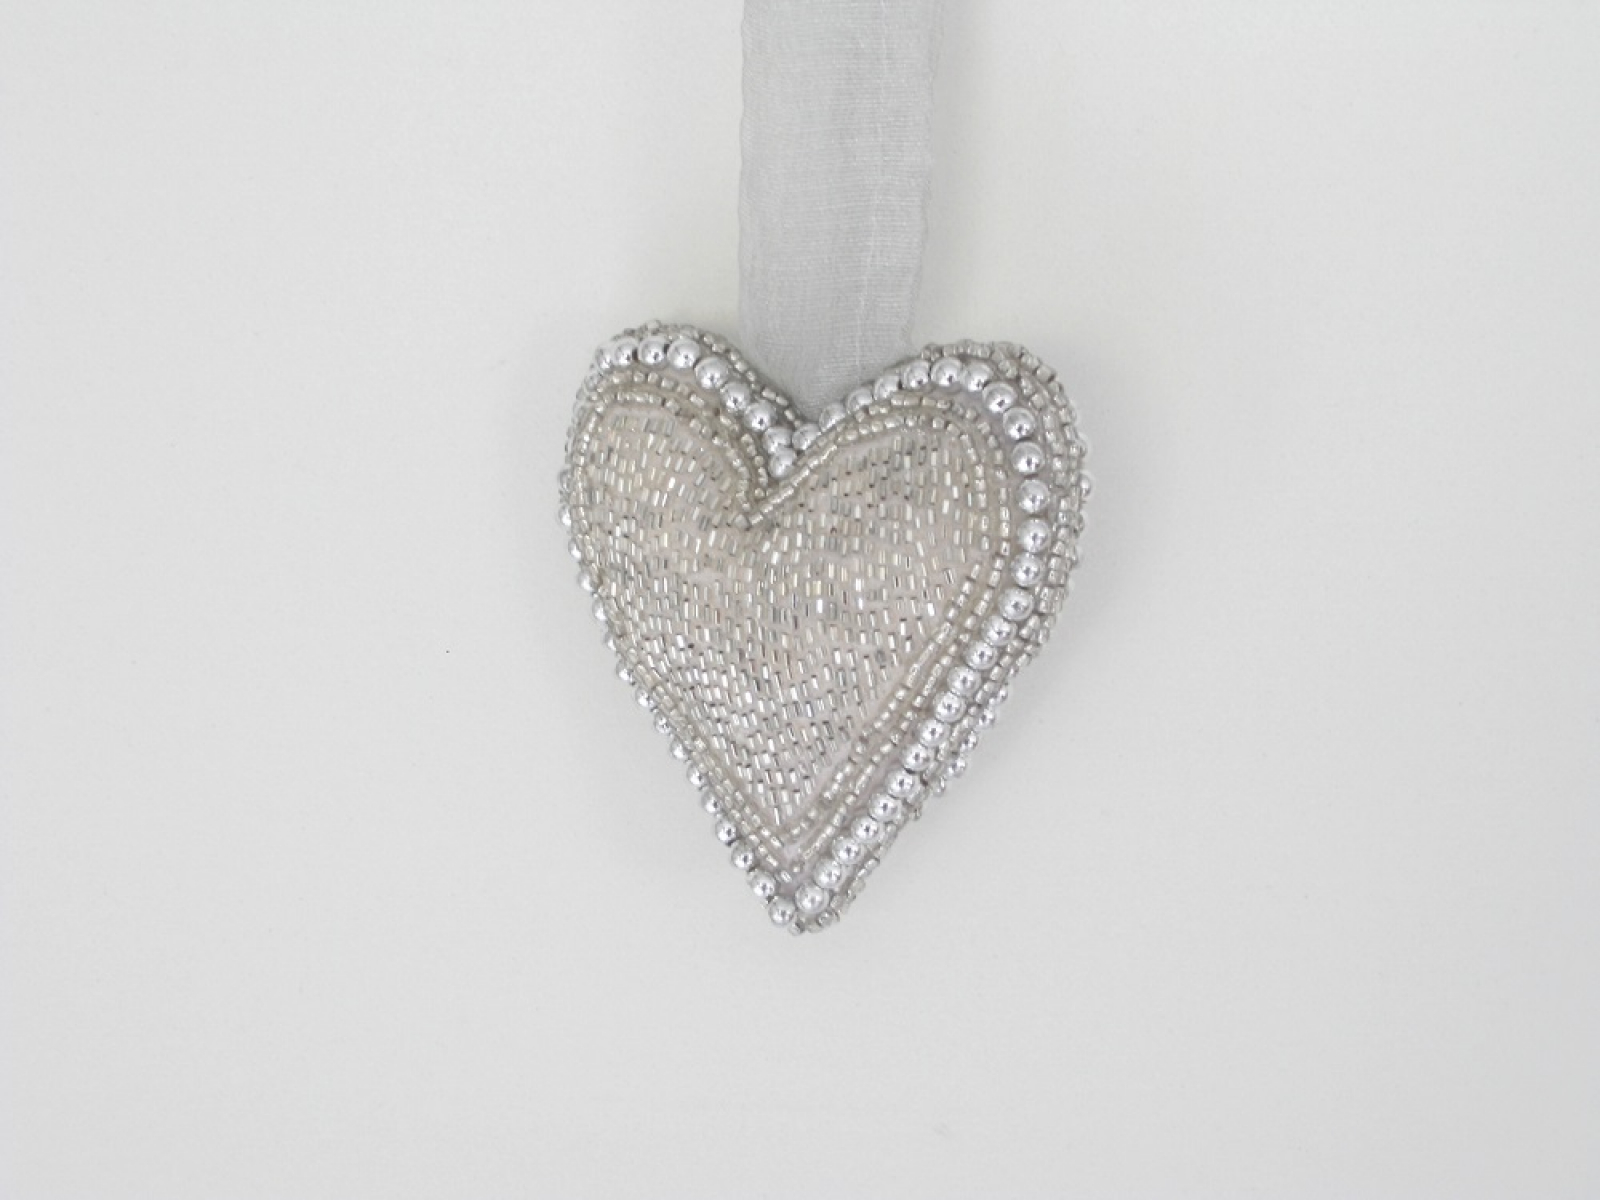 Kissen Herzform Perlen silb. 9x9cm ca.3cm dick